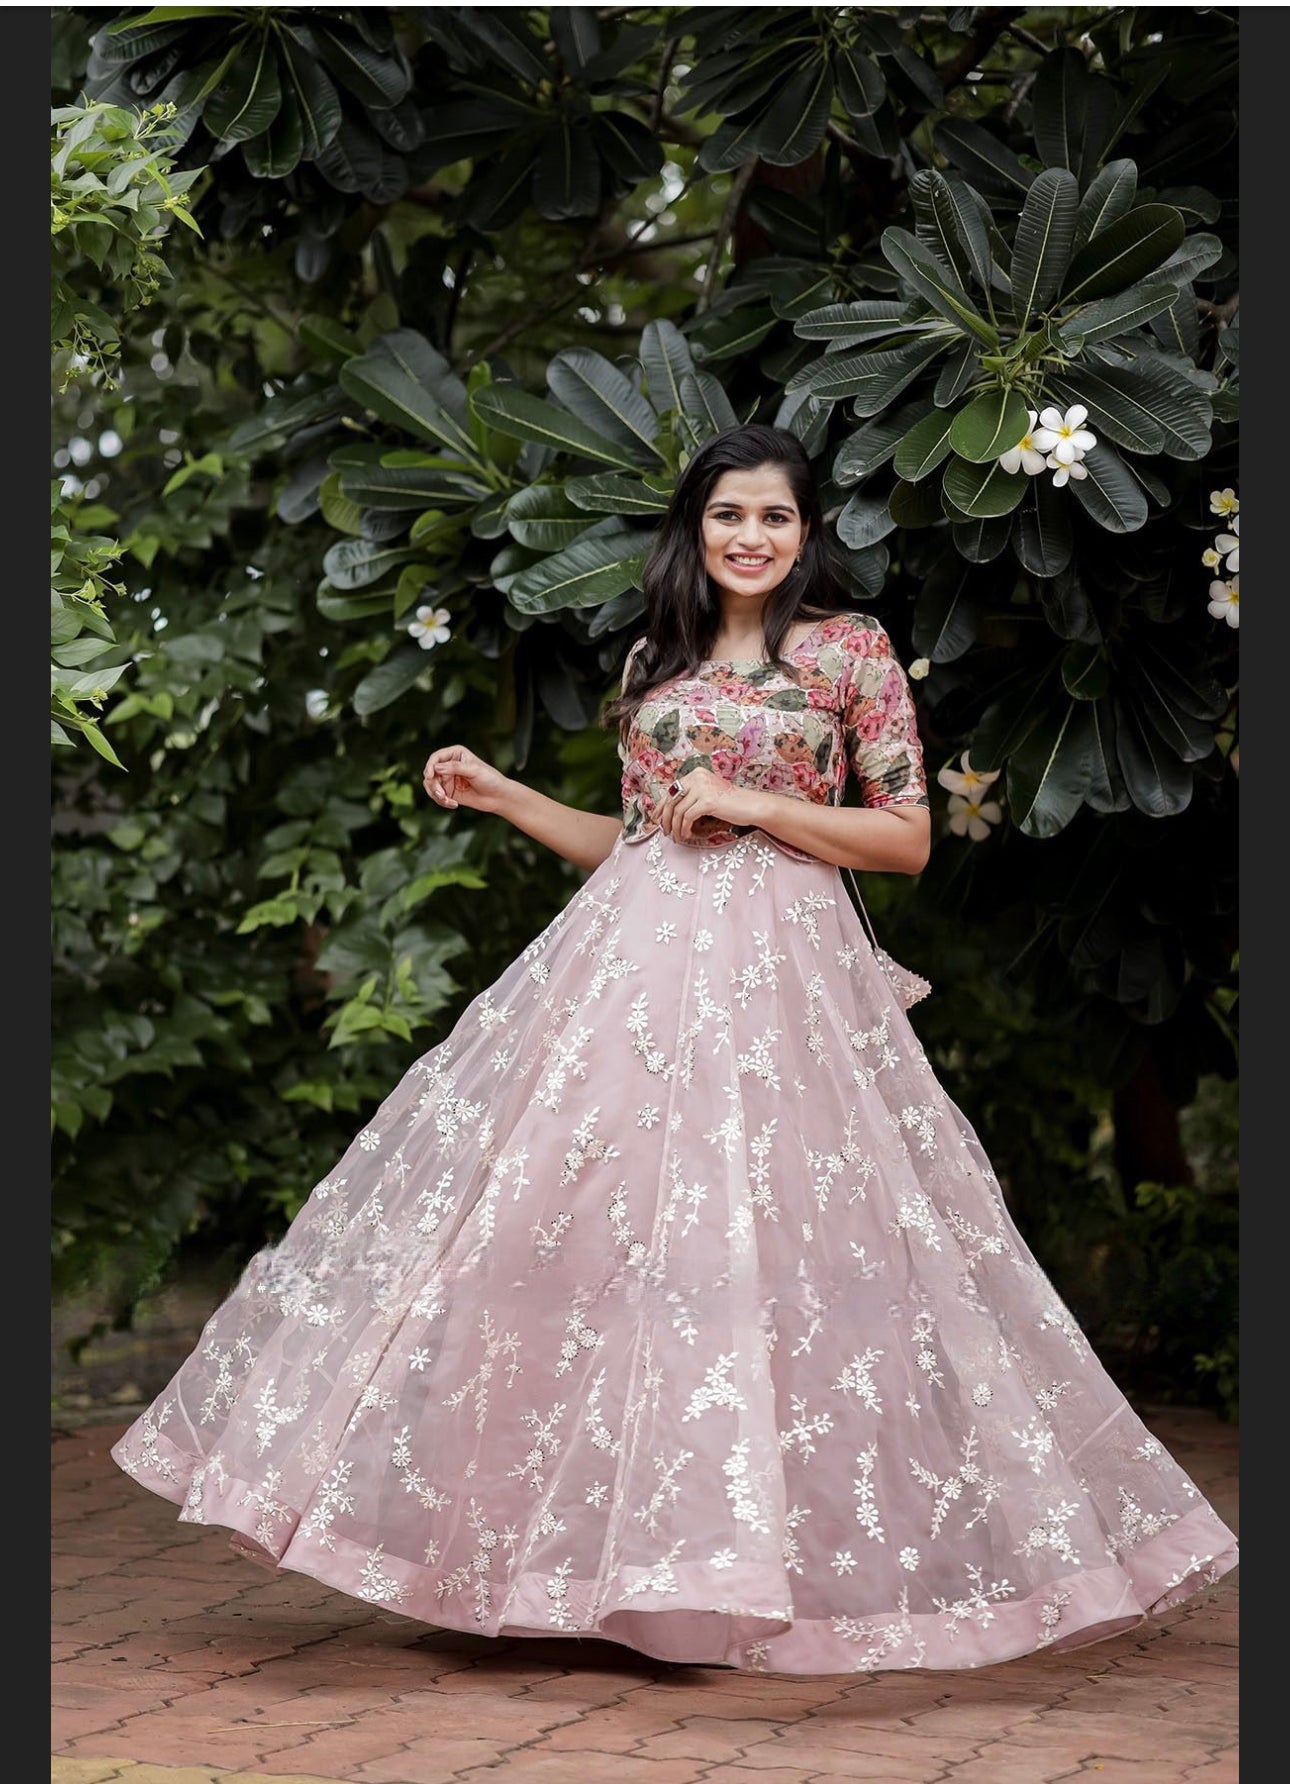 Pink Designer Organza Chikankari Long dress Partywear Dress Wedding/function dress